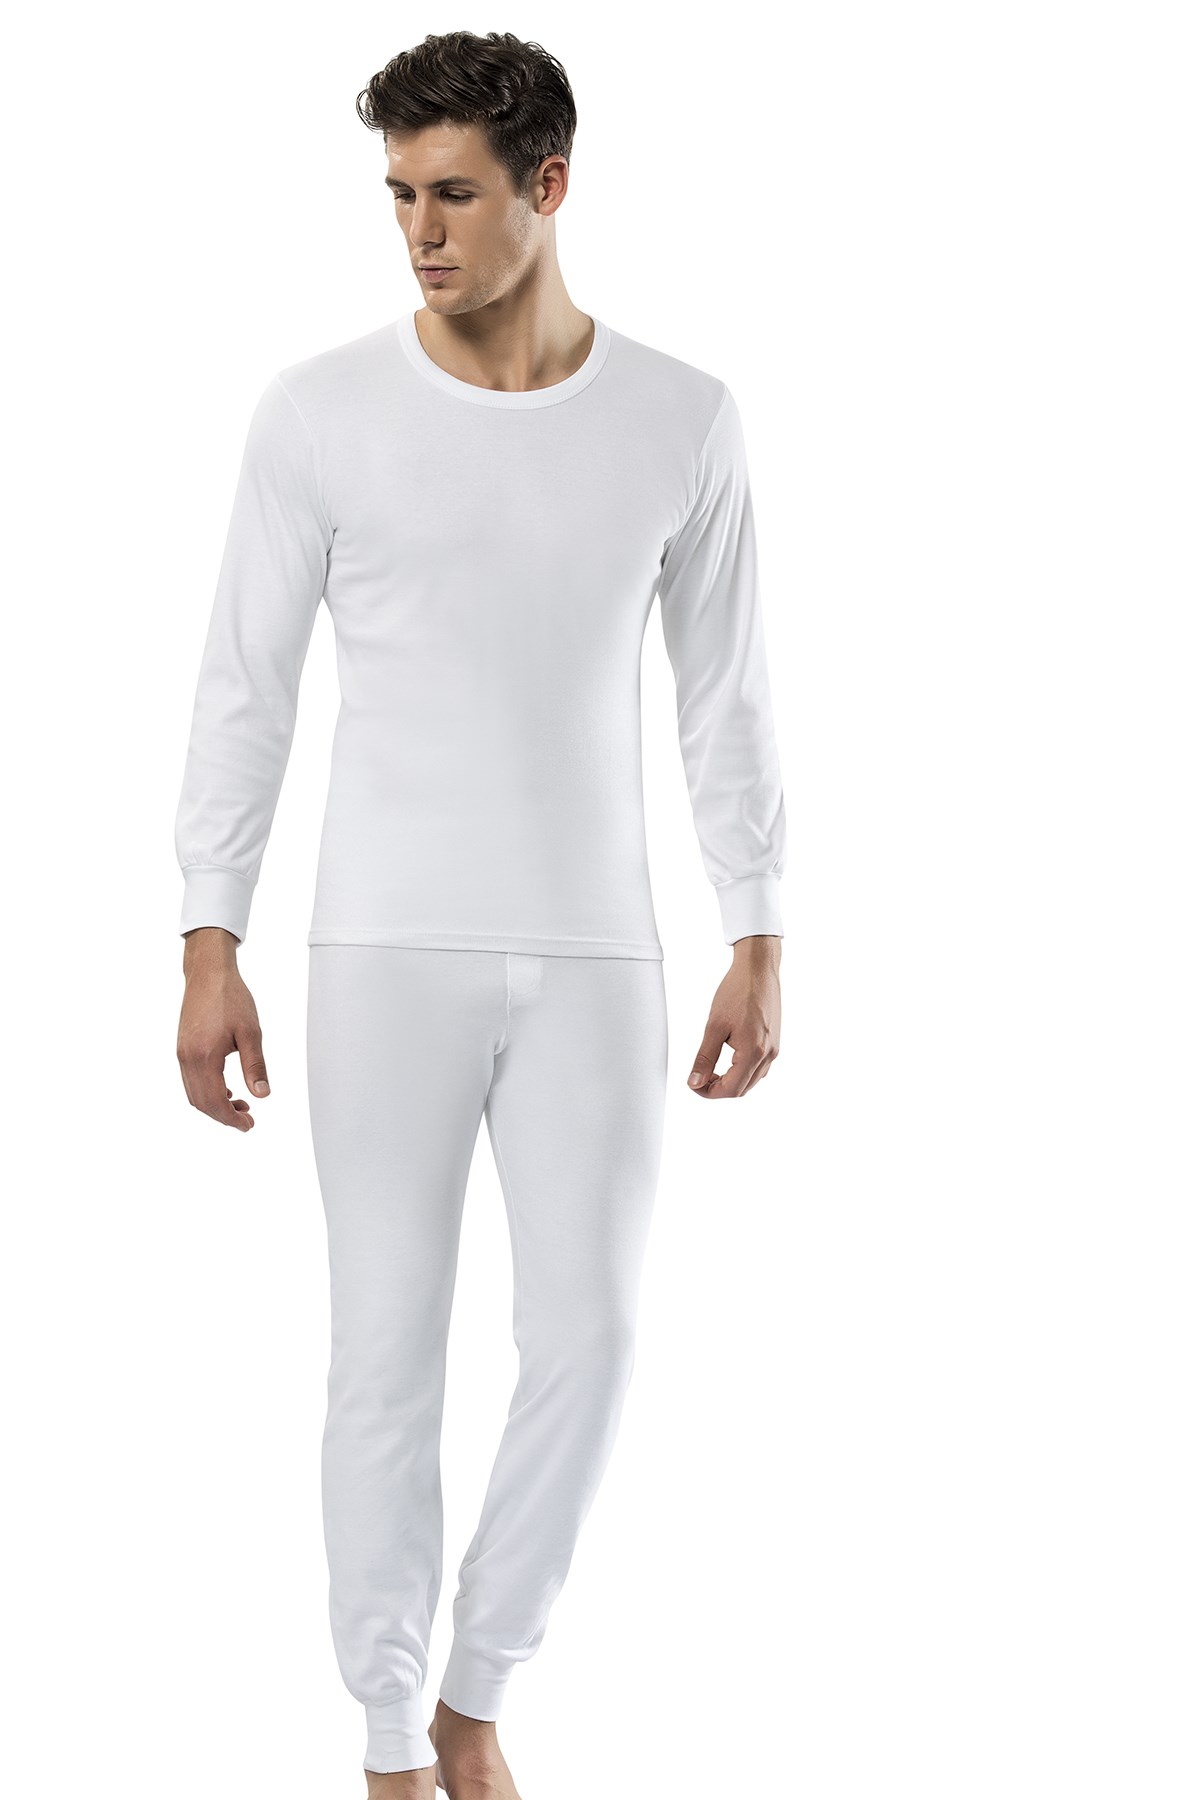 Erdem Erkek Beyaz Uzun Fanila: Erdem İç Giyim